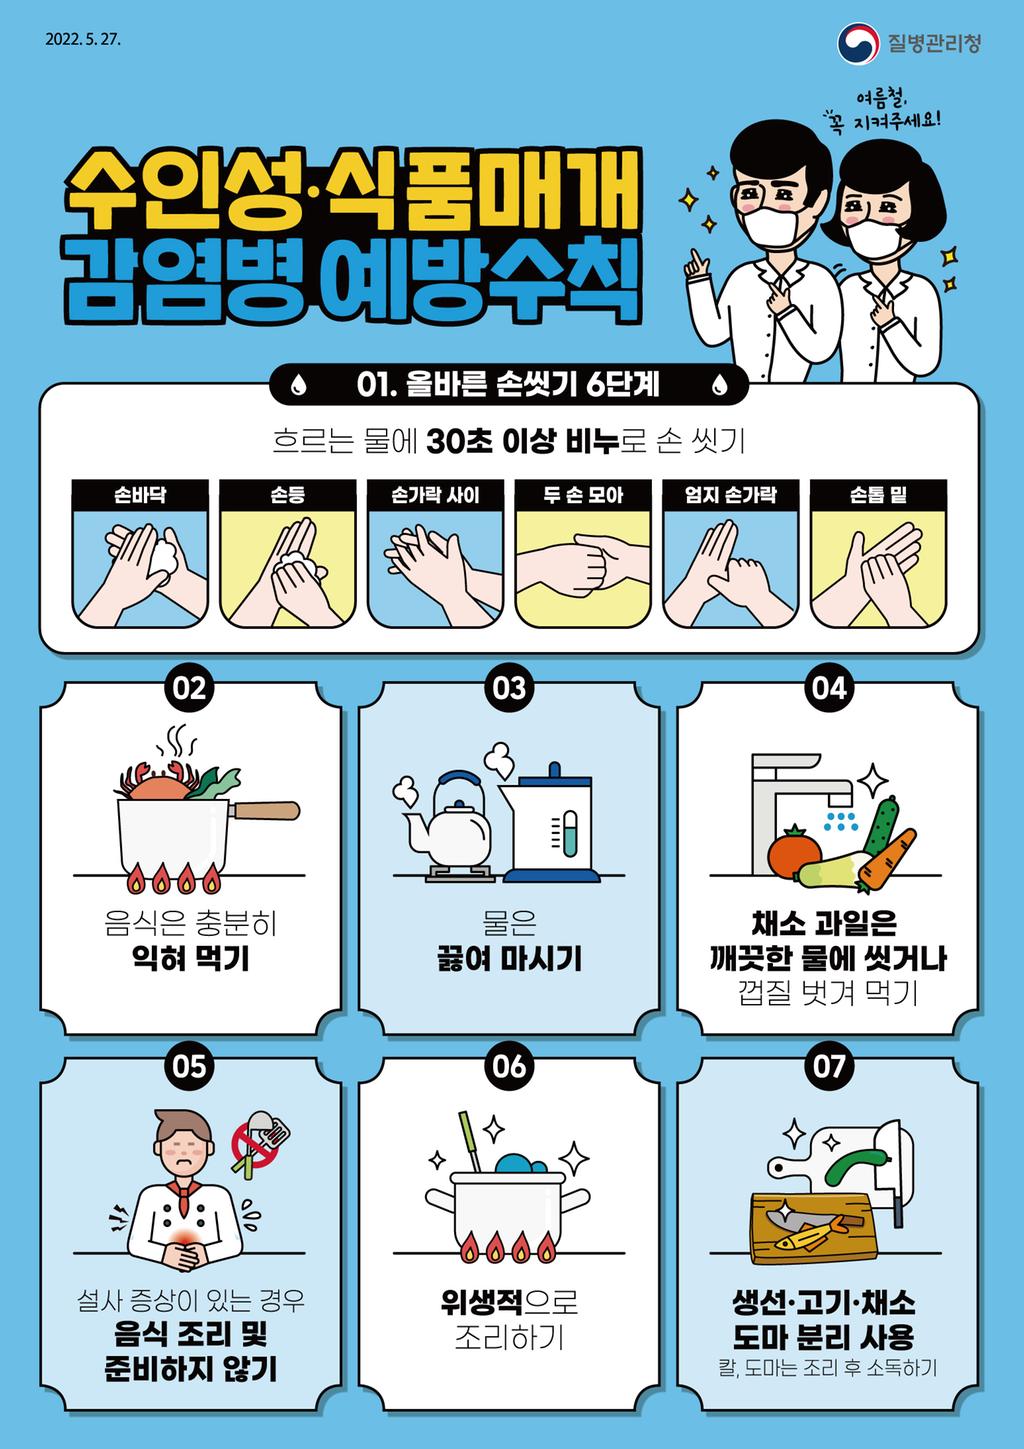 수인성 식품매개 감염병-예방수칙 포스터_JPG